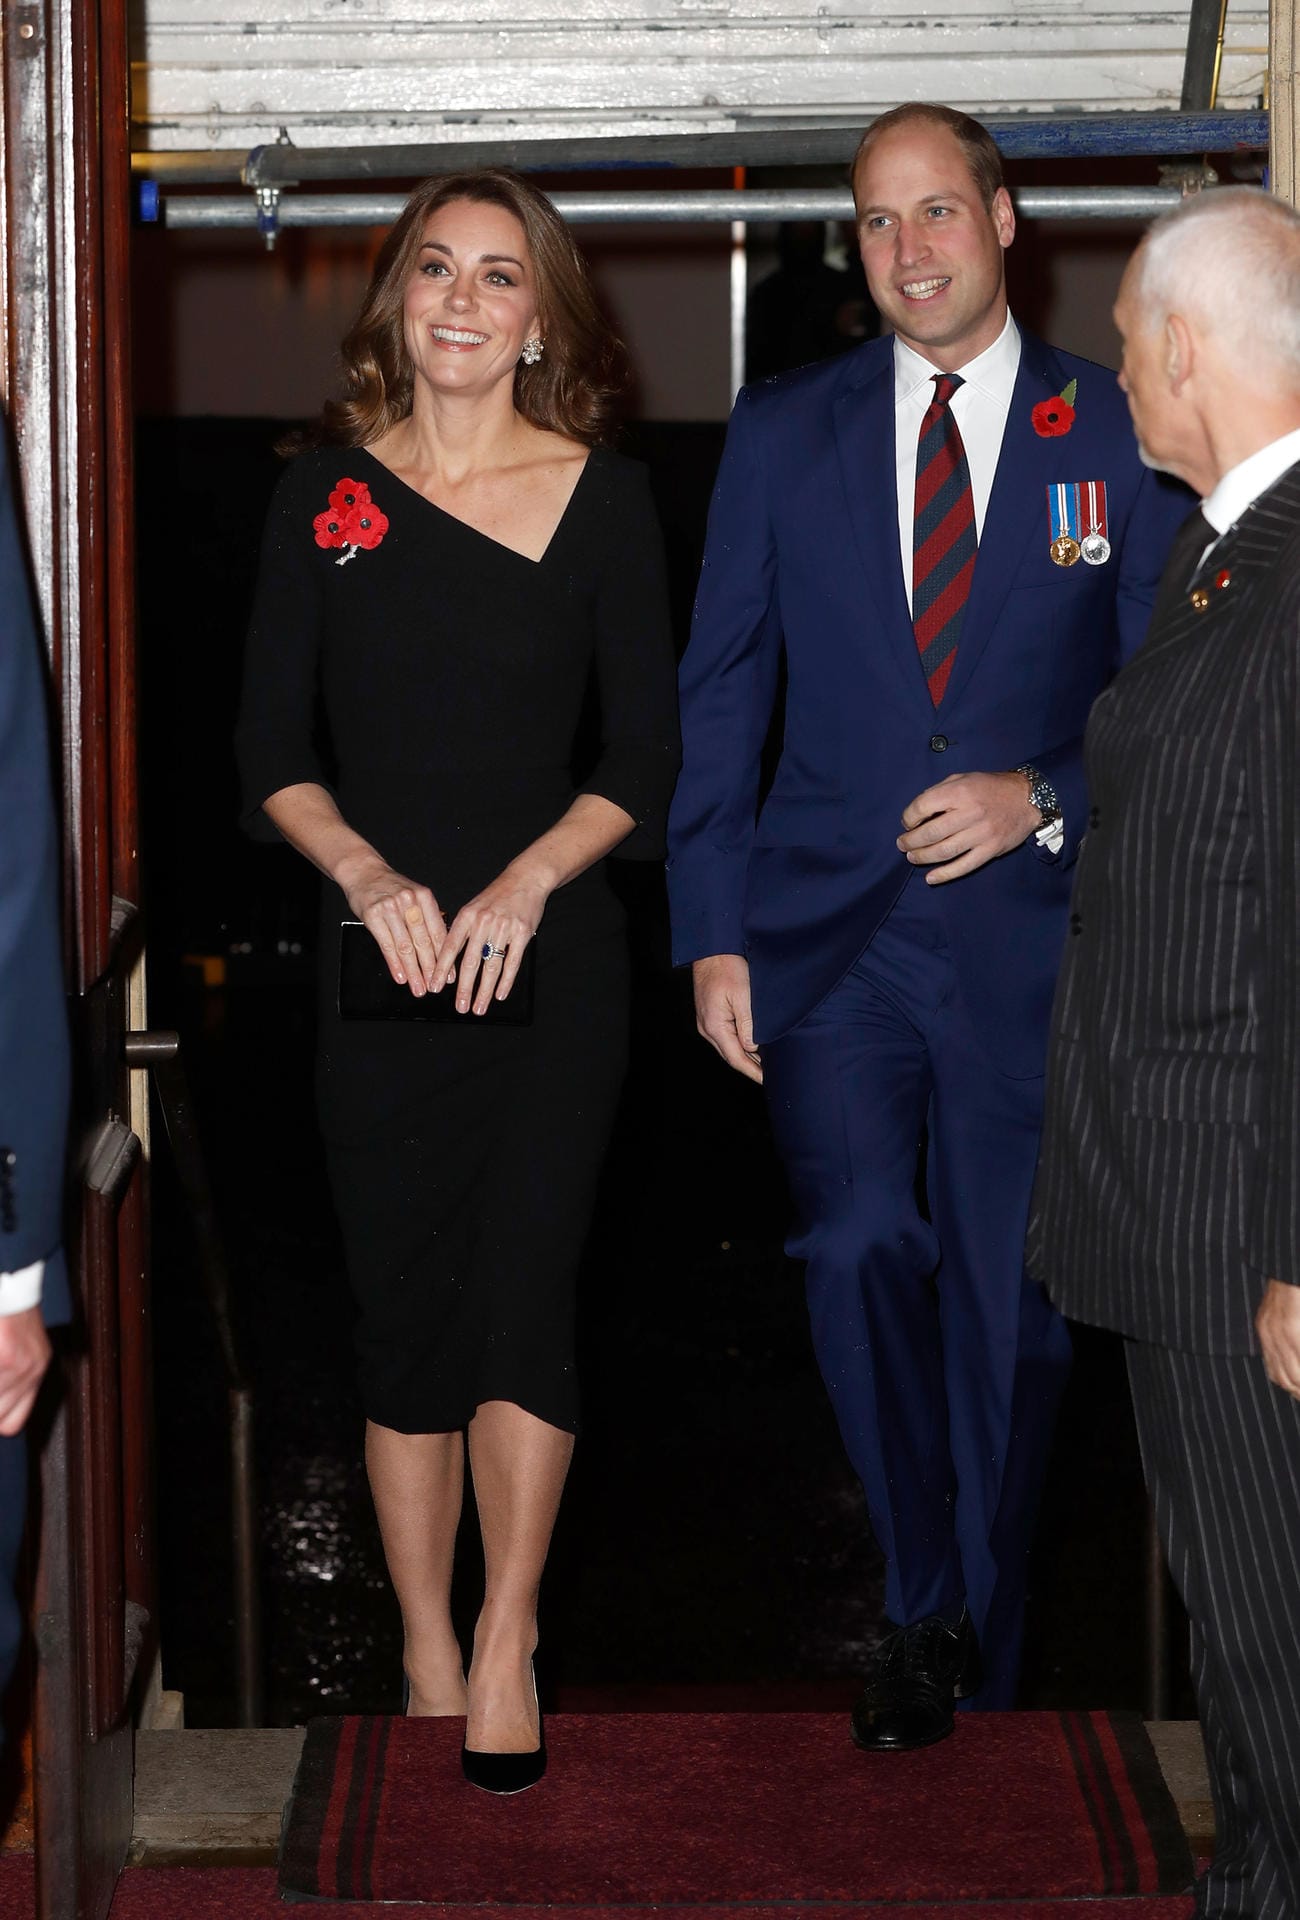 Unterwegs ohne die Kinder: Herzogin Kate trägt ein schwarzes Kleid mit raffiniertem Ausschnitt, Prinz William hat sich für einen blauen Anzug entschieden.